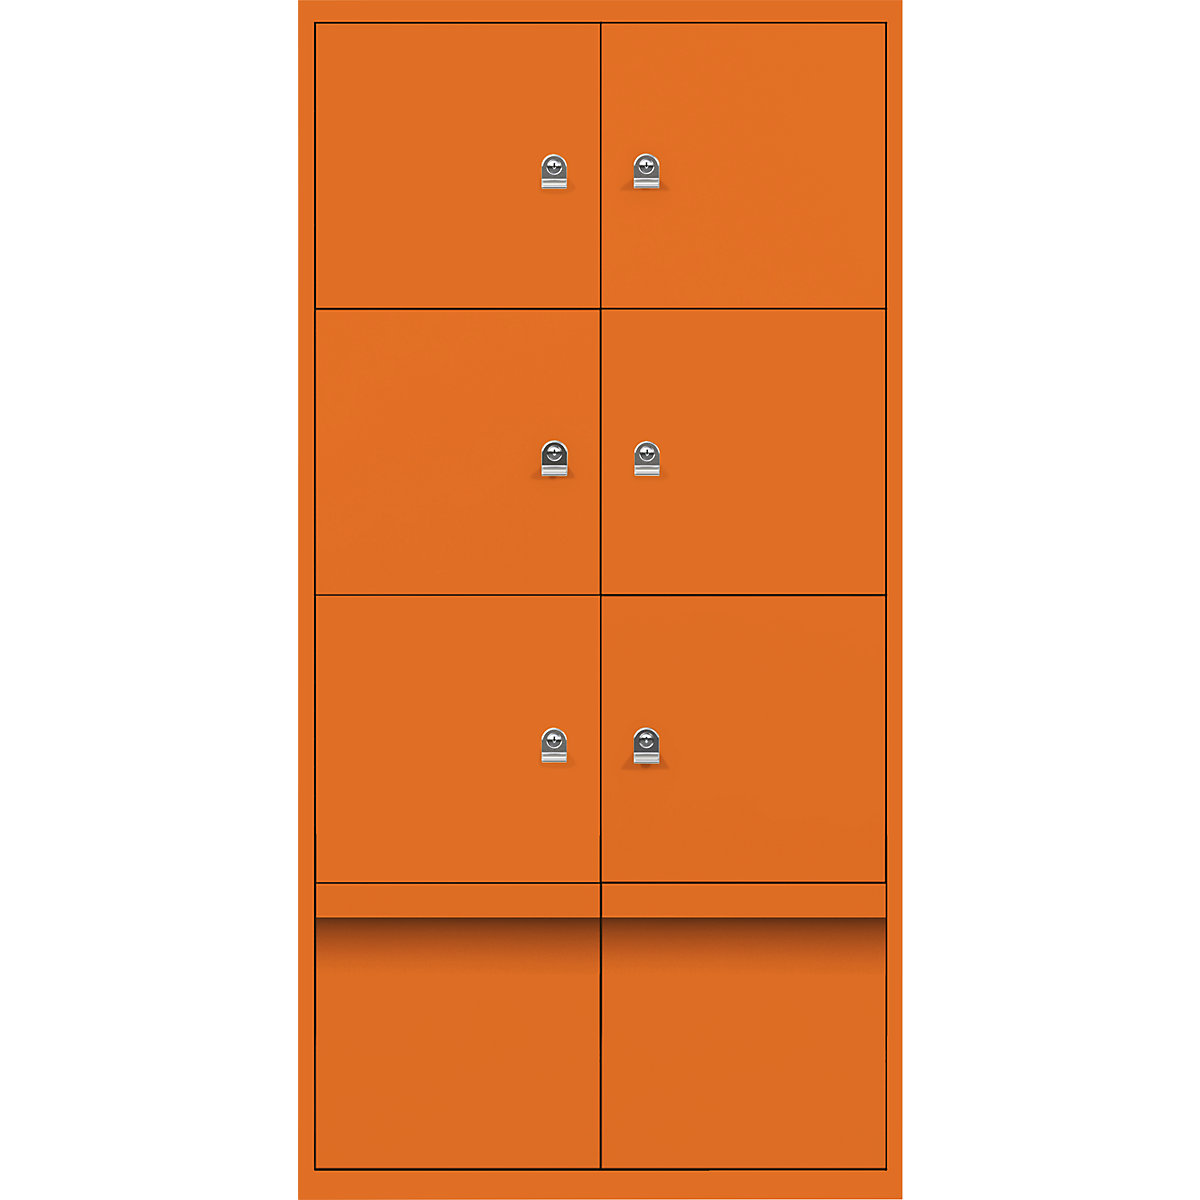 Armadietto LateralFile™ – BISLEY, con 6 scomparti con serratura e 2 cassetti, altezza 375 mm ciascuno, arancione-5